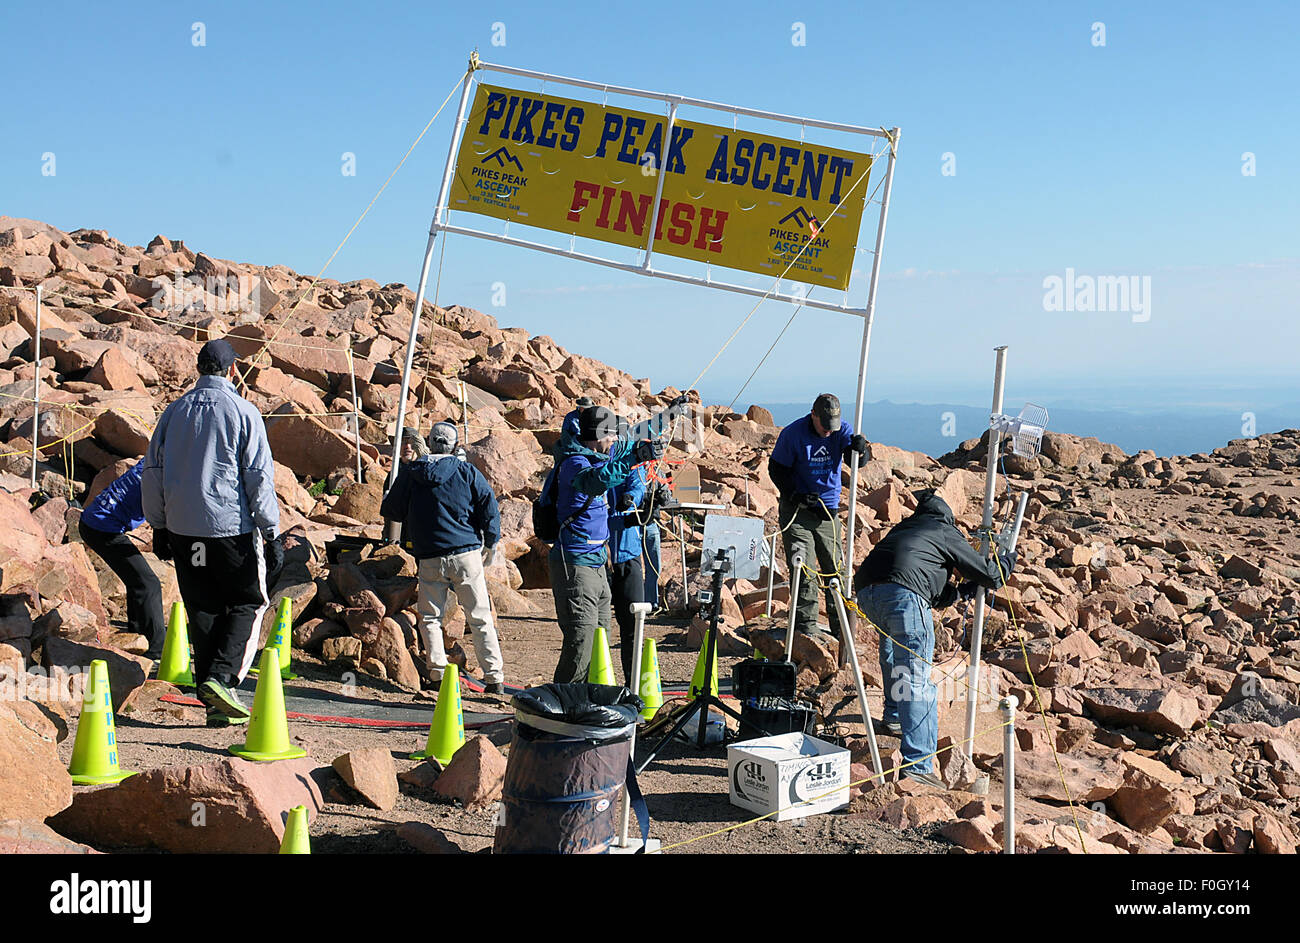 Manitou Springs, Colorado, USA. 15. August 2015. Rennen-Arbeiter kämpfen Gipfel Wind die Finish-Banner vor der 60. Ausgabe des Pikes Peak Aufstiegs einrichten. Während des Aufstiegs Läufer decken 13,3 Meilen und gewinnen mehr als 7815 Füße (2382m) von der Zeit erreichen sie den Gipfel von 14.115 ft (4302m). Am zweiten Tag des Rennwochenendes werden 800 Marathonläufer machen die hin-und Rückfahrt und decken 26,6 Meilen Höhe und sehr schwierigem Gelände in Pike National Forest, Manitou Springs, CO. © Csm/Alamy Live-Nachrichten Stockfoto